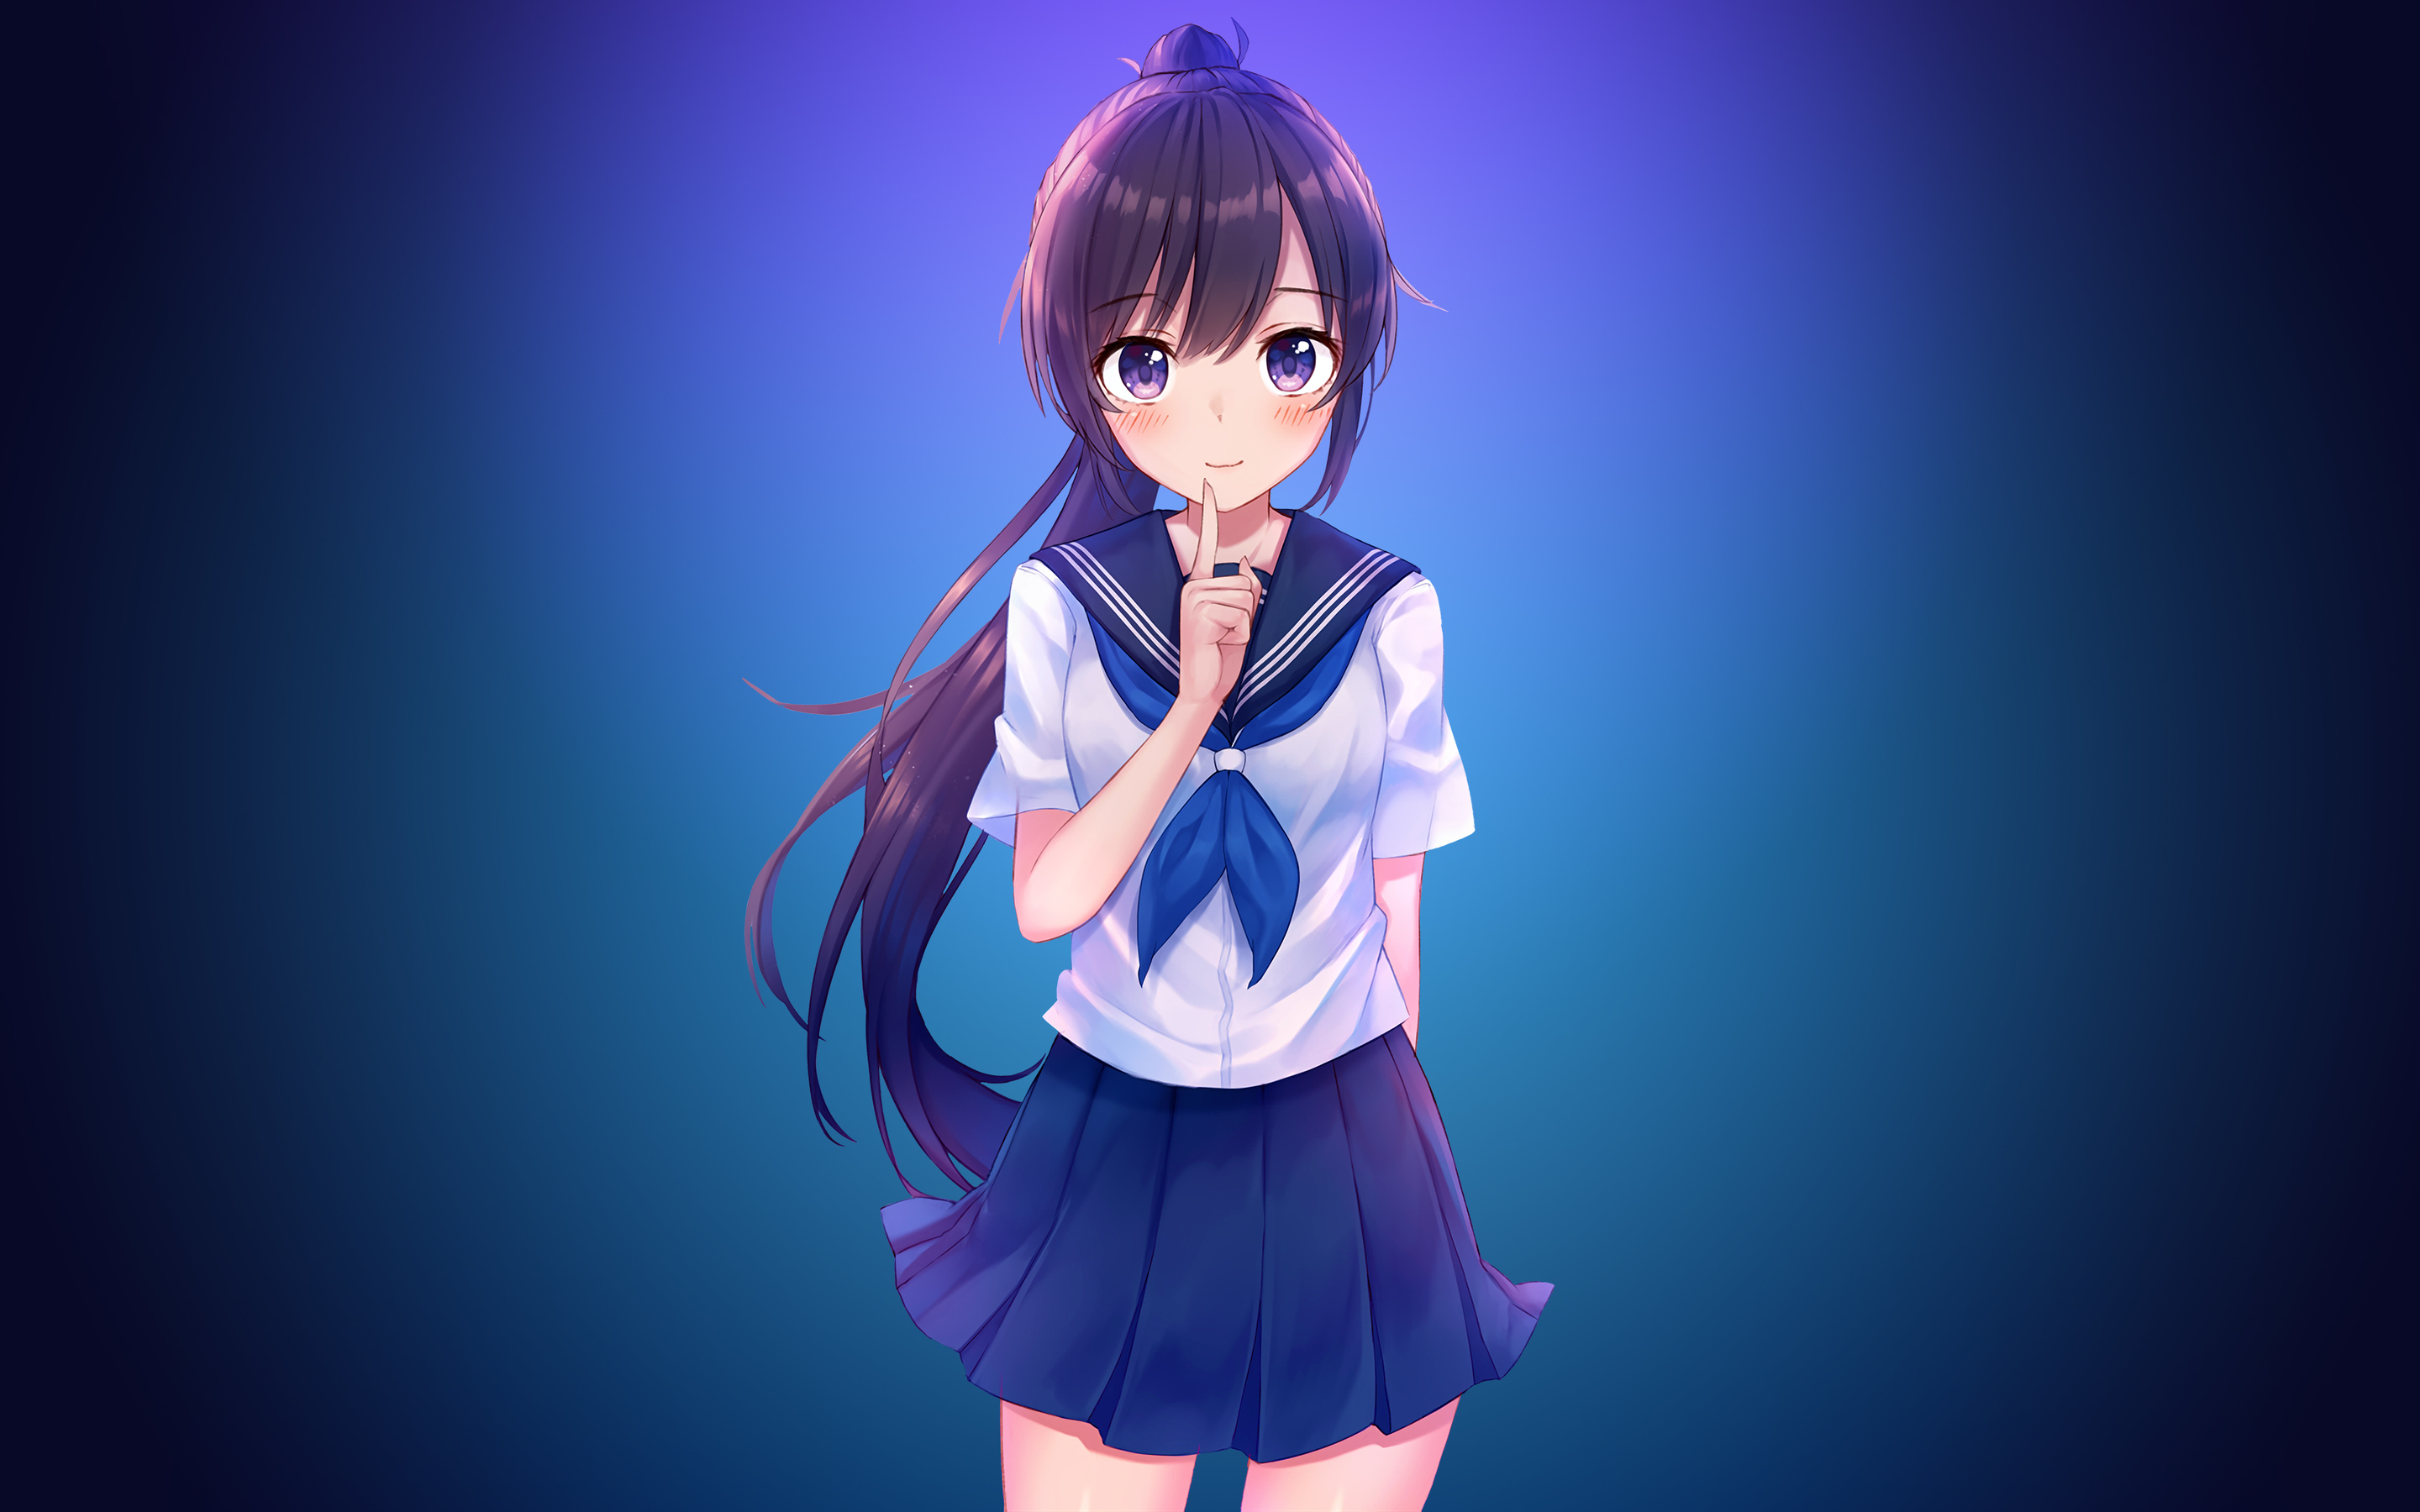 Anime Girl In School Uniform 4k Macbook Pro Retina